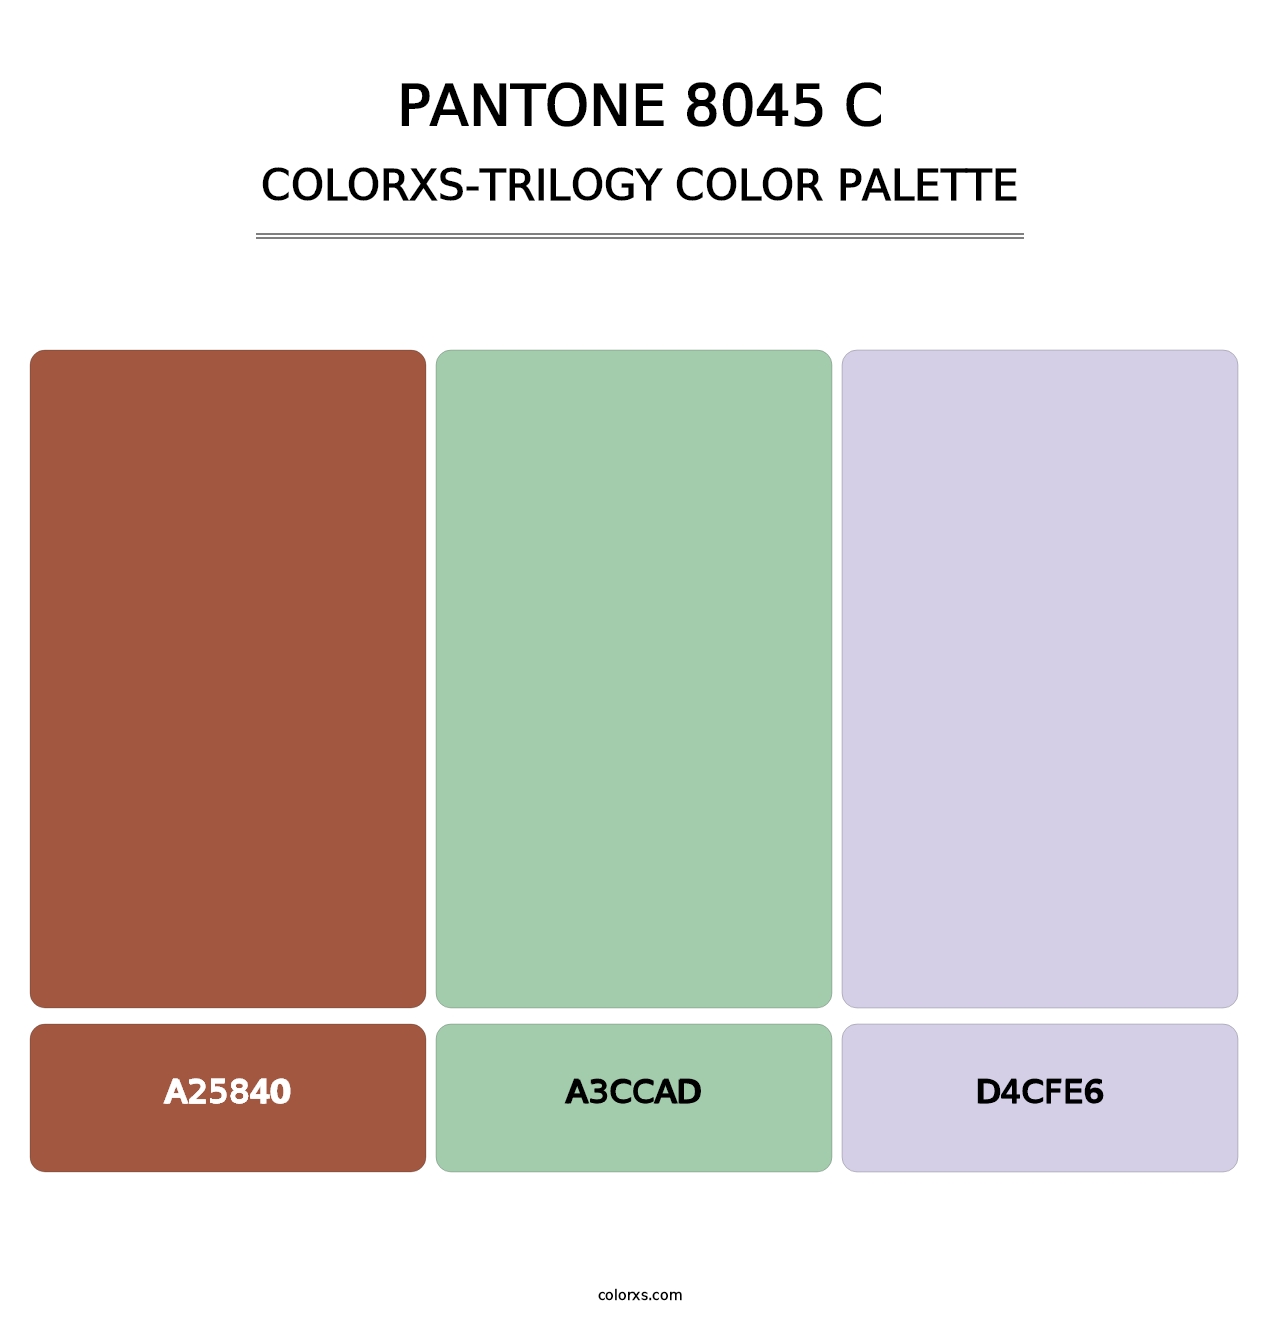 PANTONE 8045 C - Colorxs Trilogy Palette